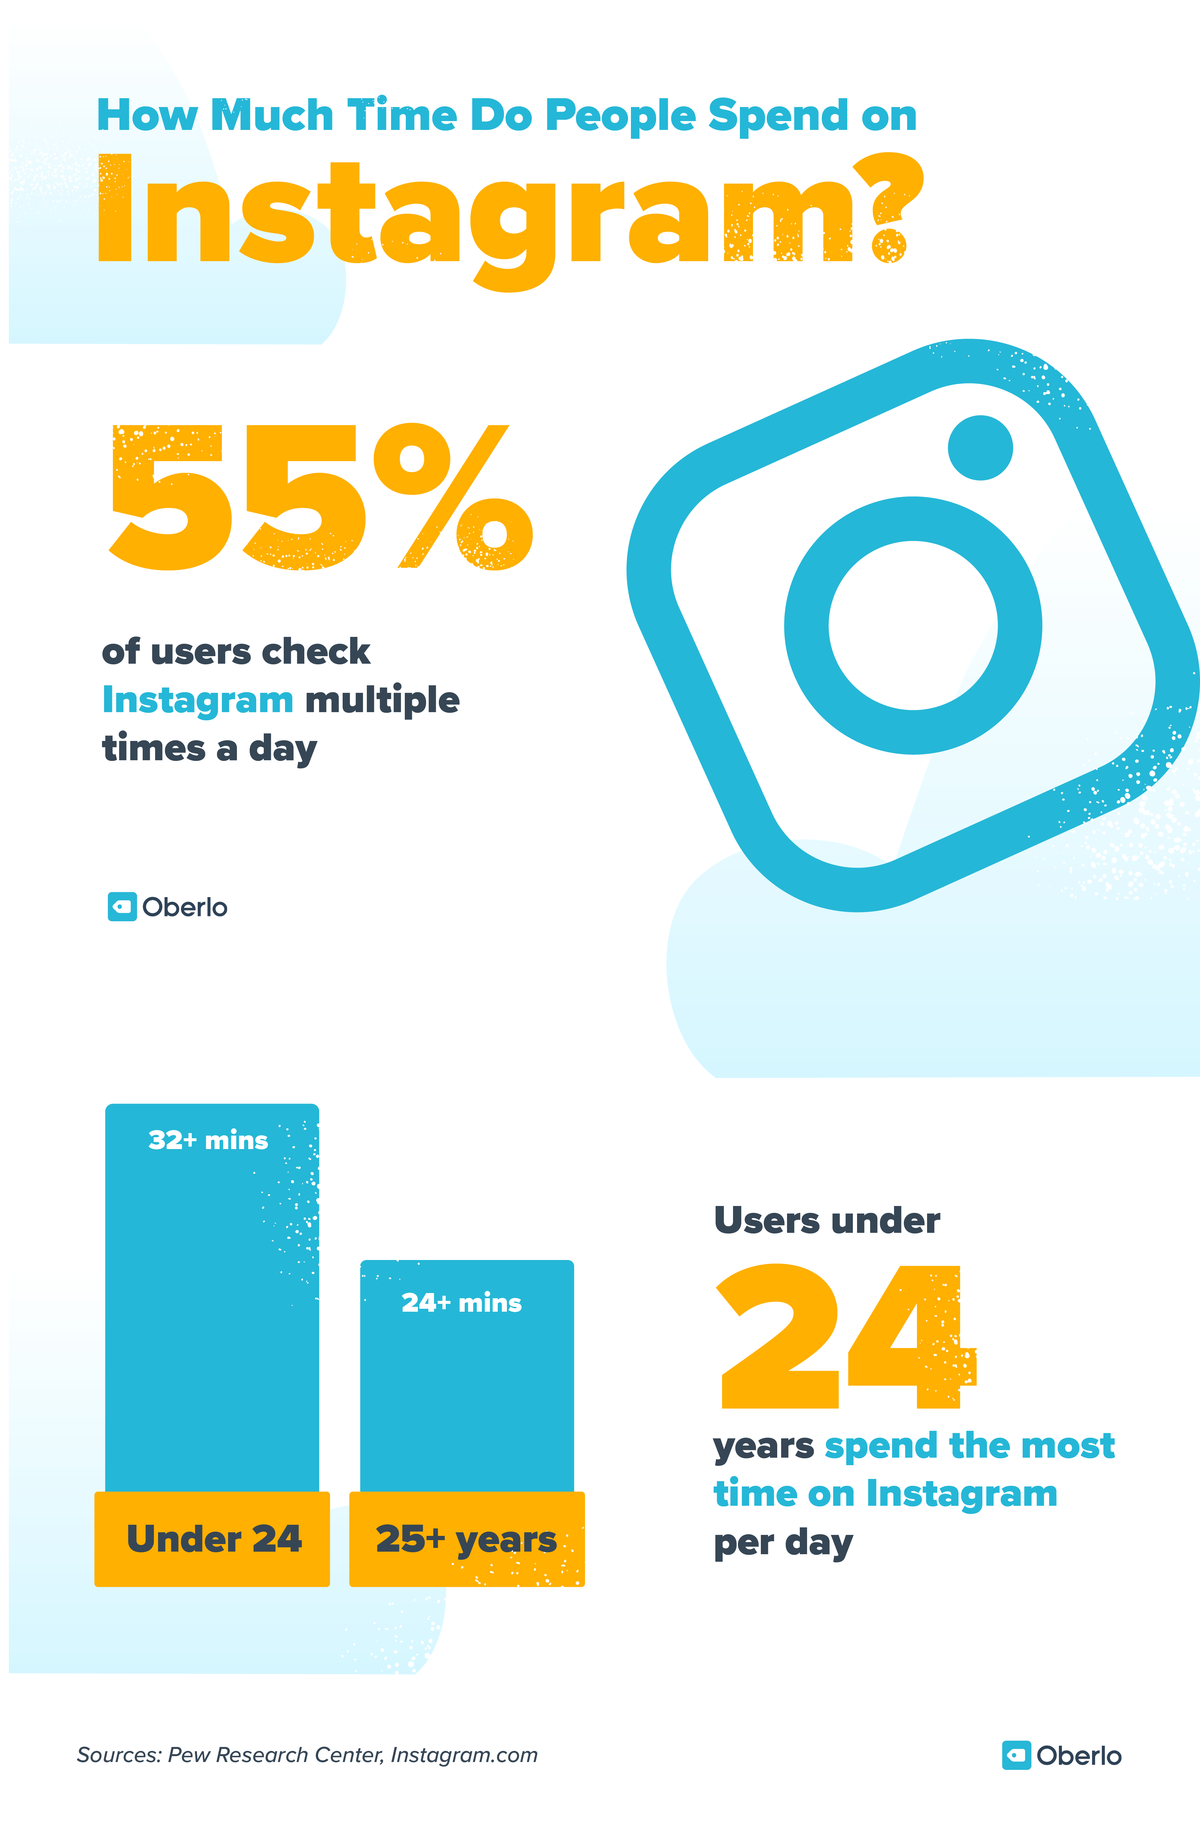 Estadístiques de màrqueting a les xarxes socials: el 55% dels usuaris d’Instagram ho comproven diverses vegades al dia. Els usuaris menors de 24 anys passen més temps a Instagram per dia (més de 32 minuts)